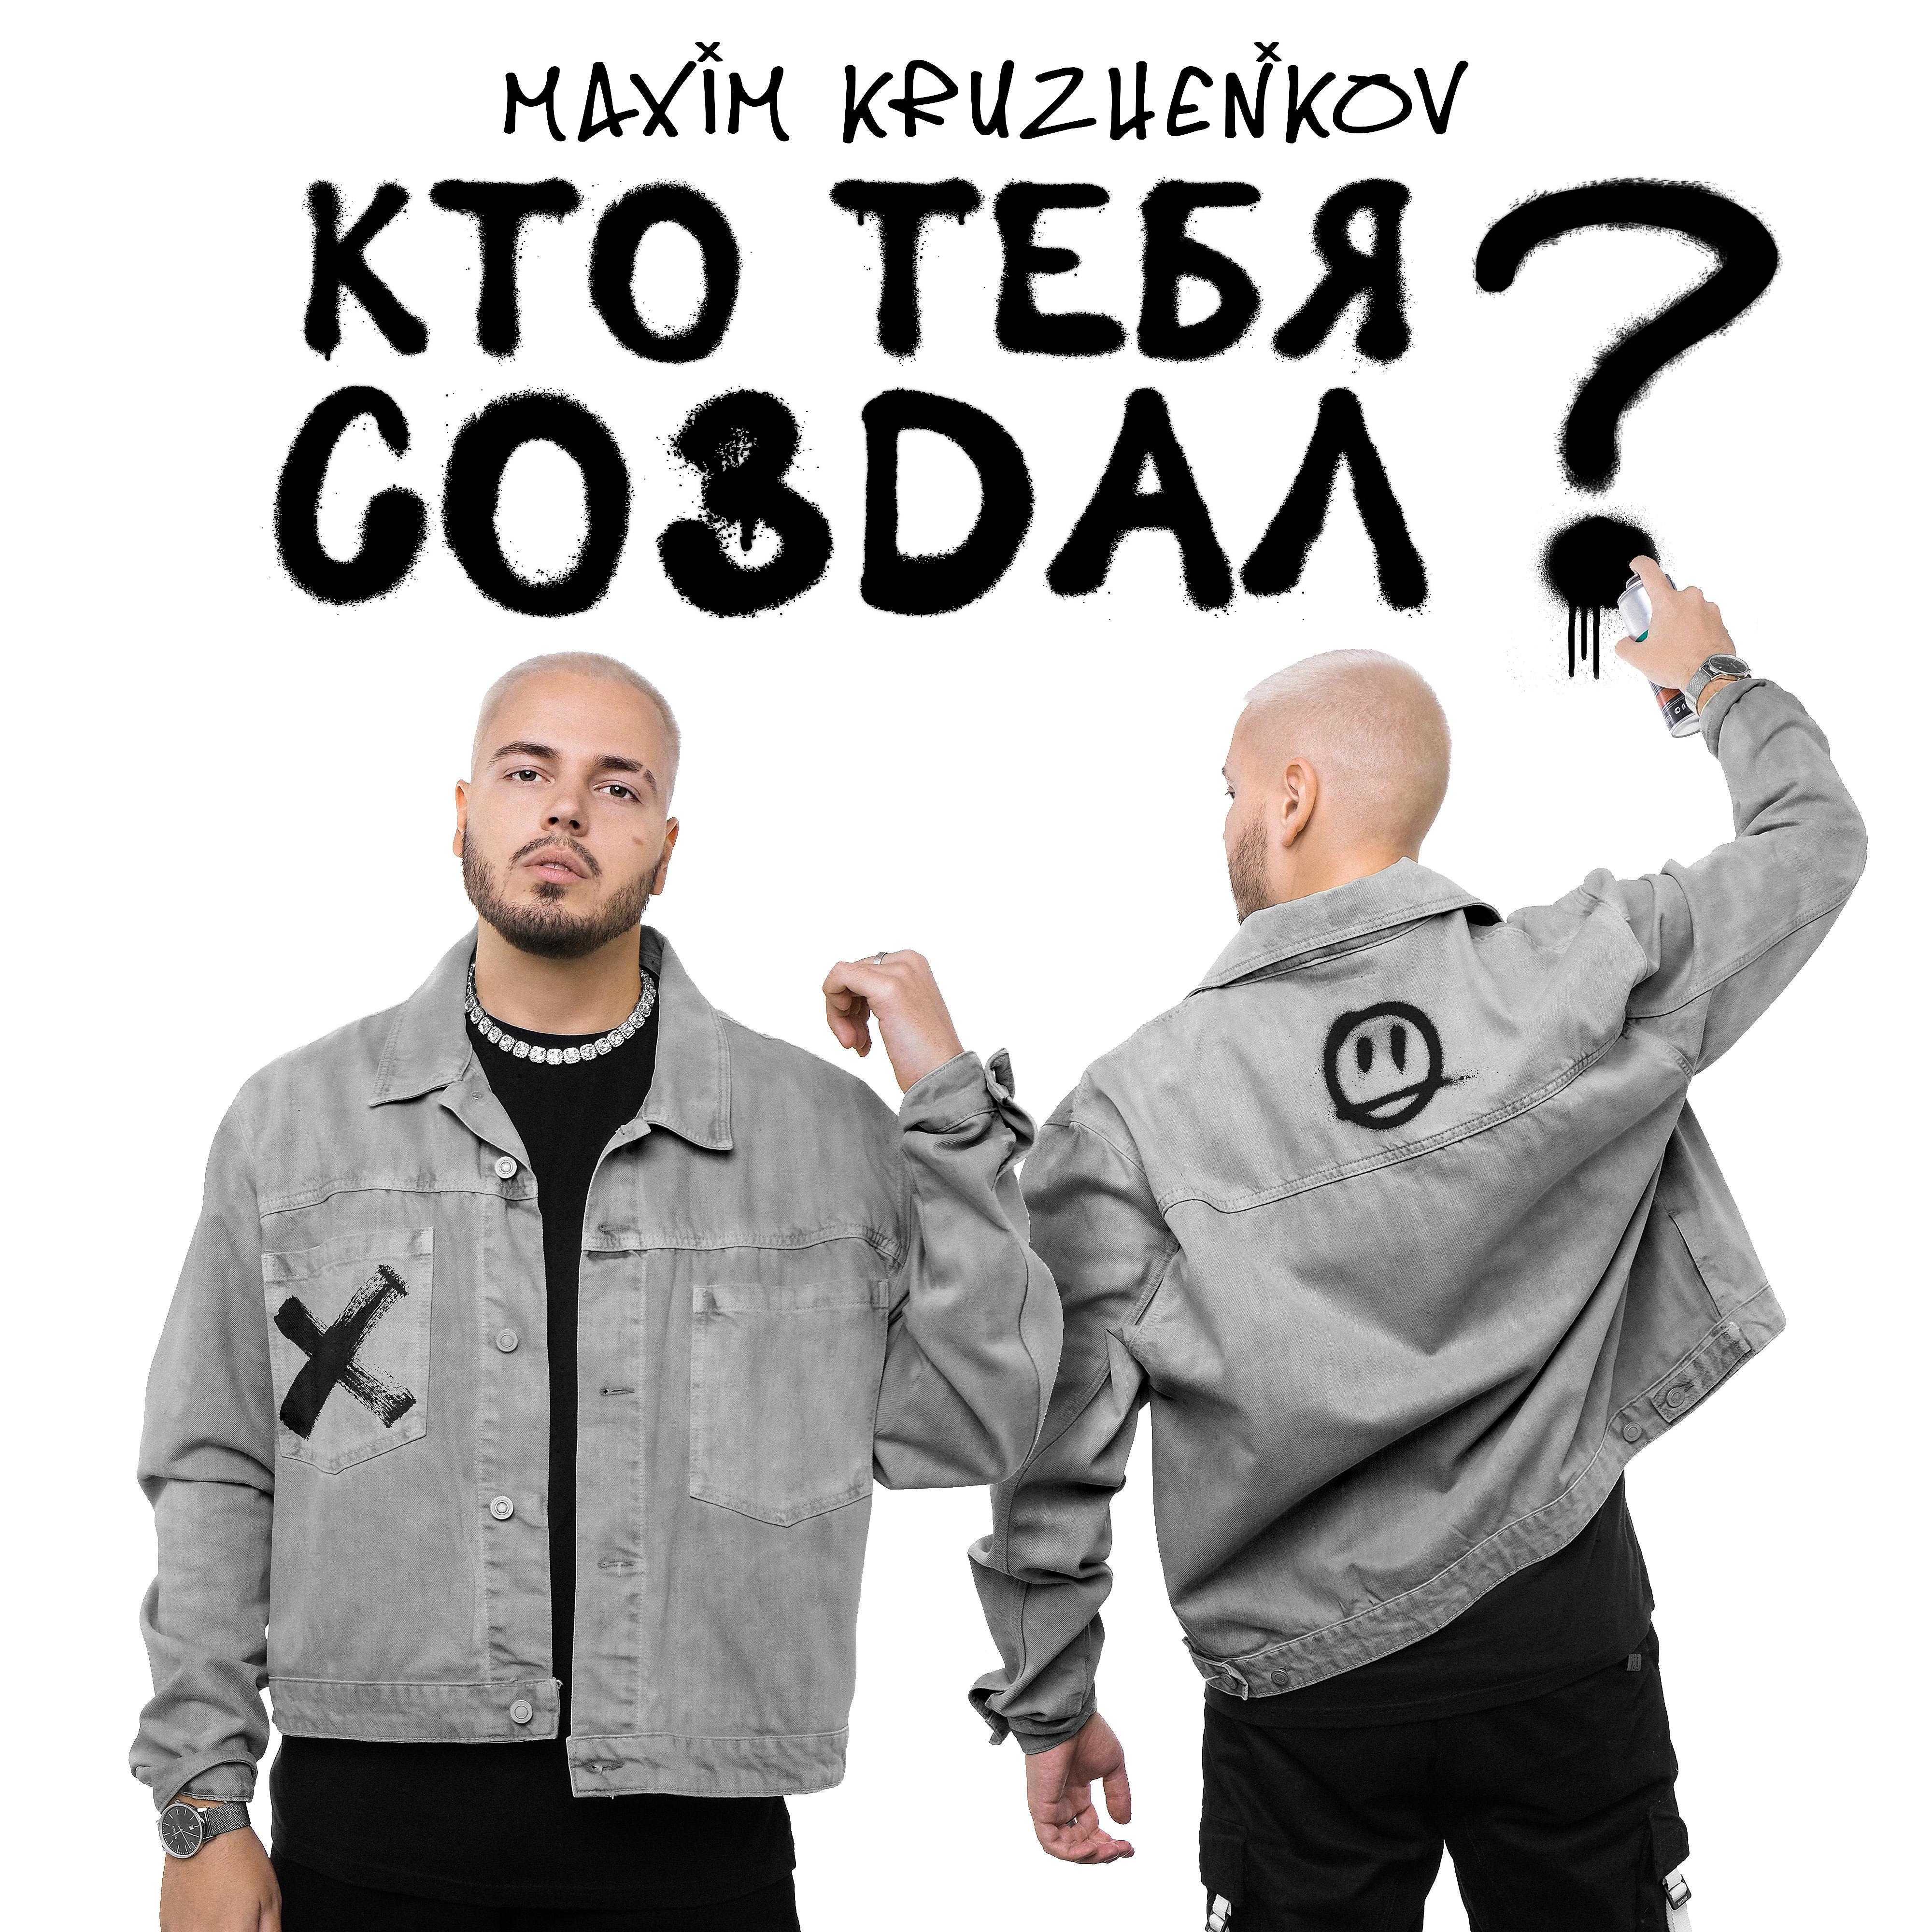 Максим Круженков - Кто тебя создал? скачать ремикс 